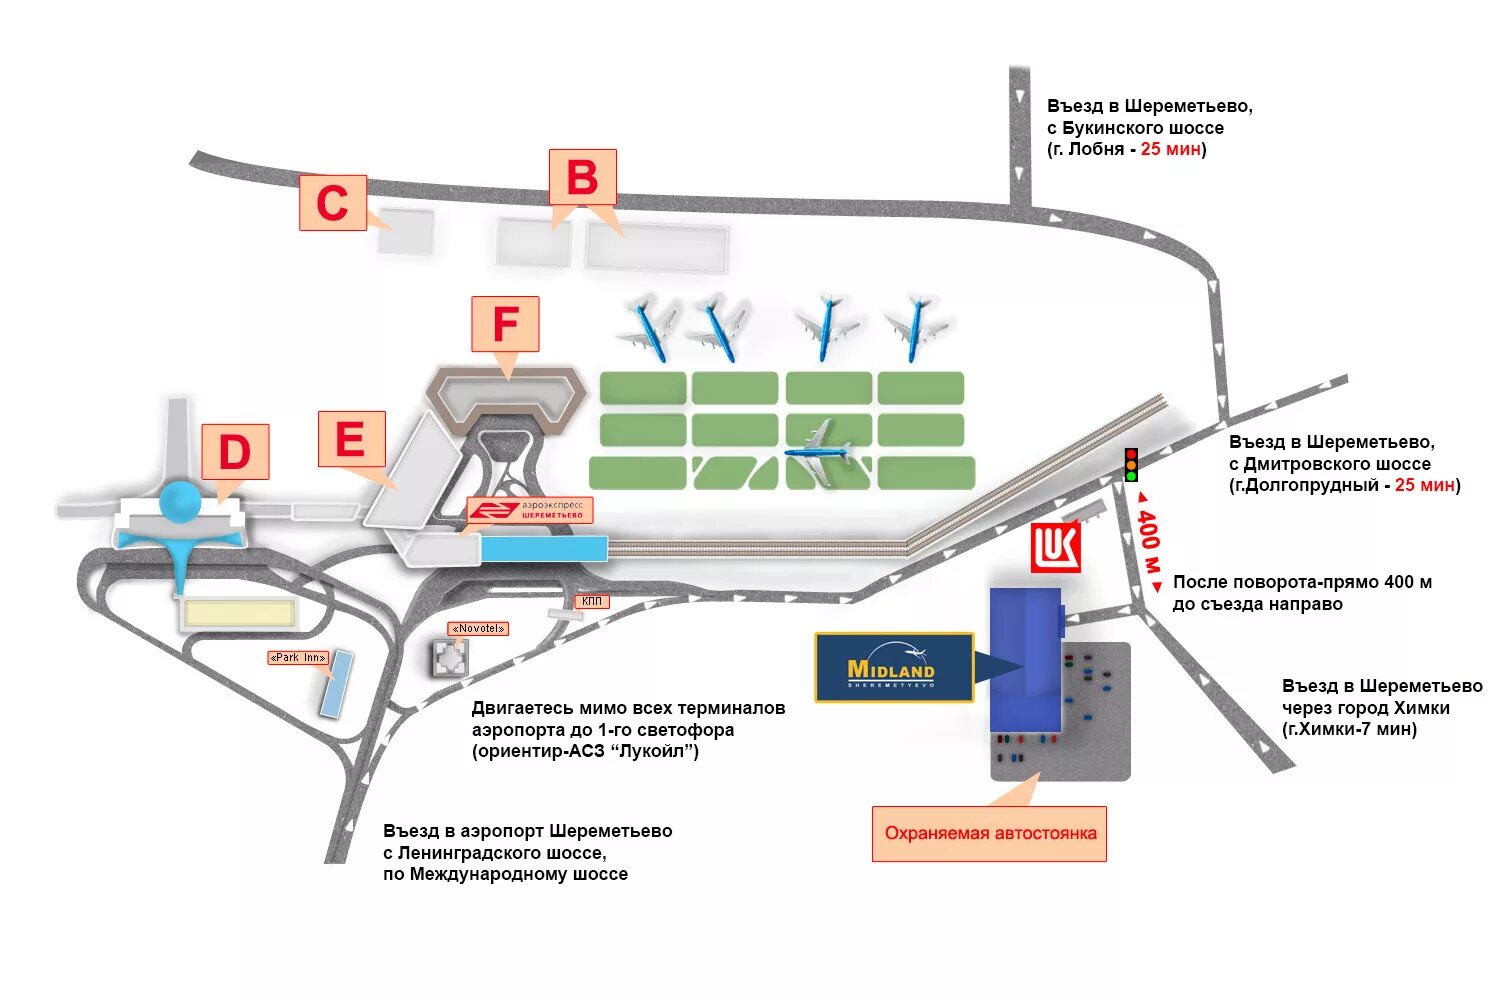 Шереметьево терминал как как подъехать. Схема аэропорта Шереметьево терминал b вылет. Аэропорт Шереметьево терминал b схема прилета. Терминалы в Шереметьево схема расположения терминалов аэропорта. Схема аэропорта Шереметьево 2 терминал b.